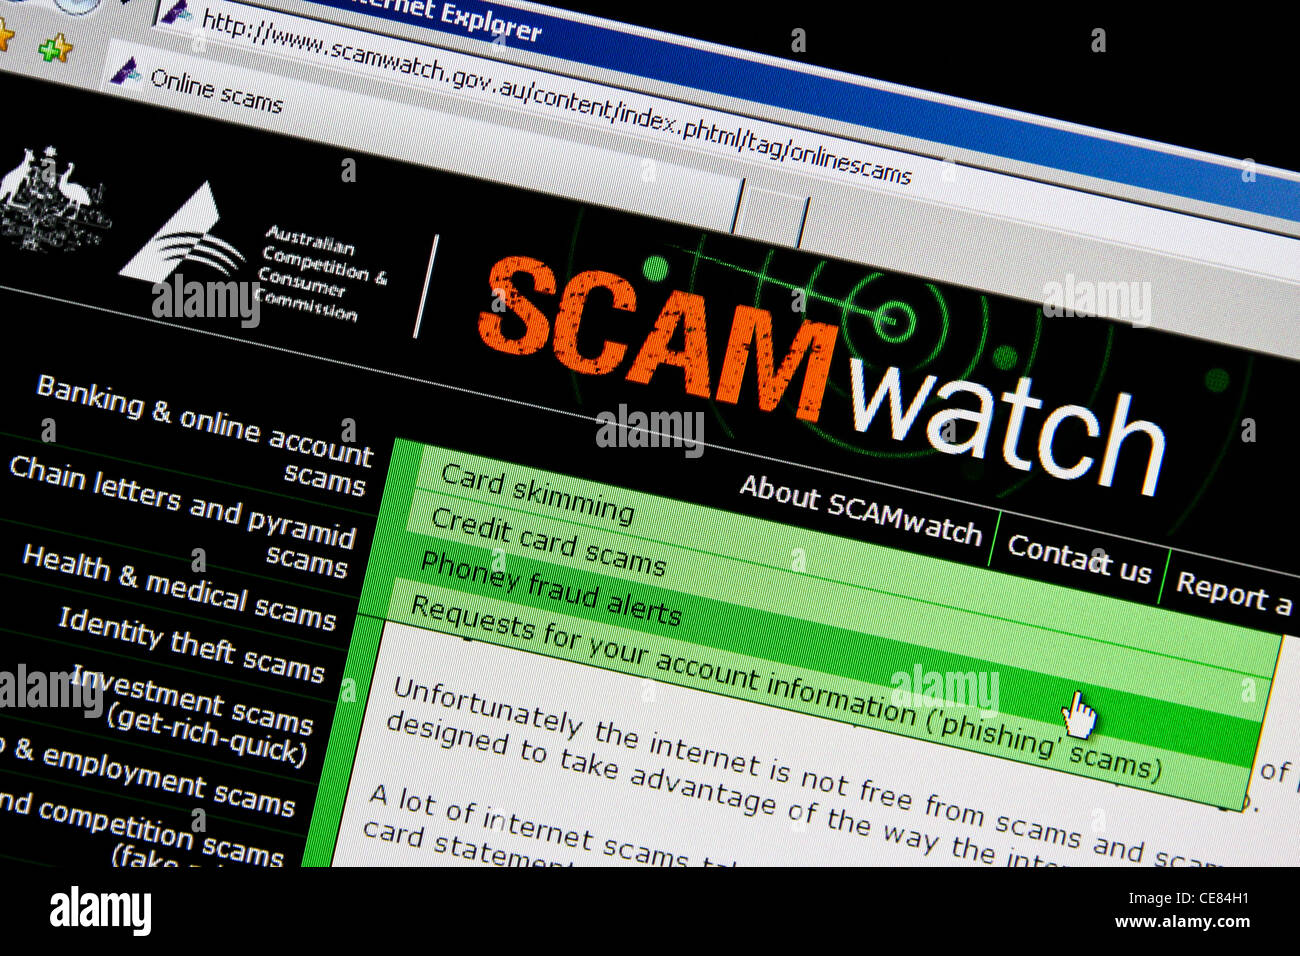 online scam watch website Stock Photo